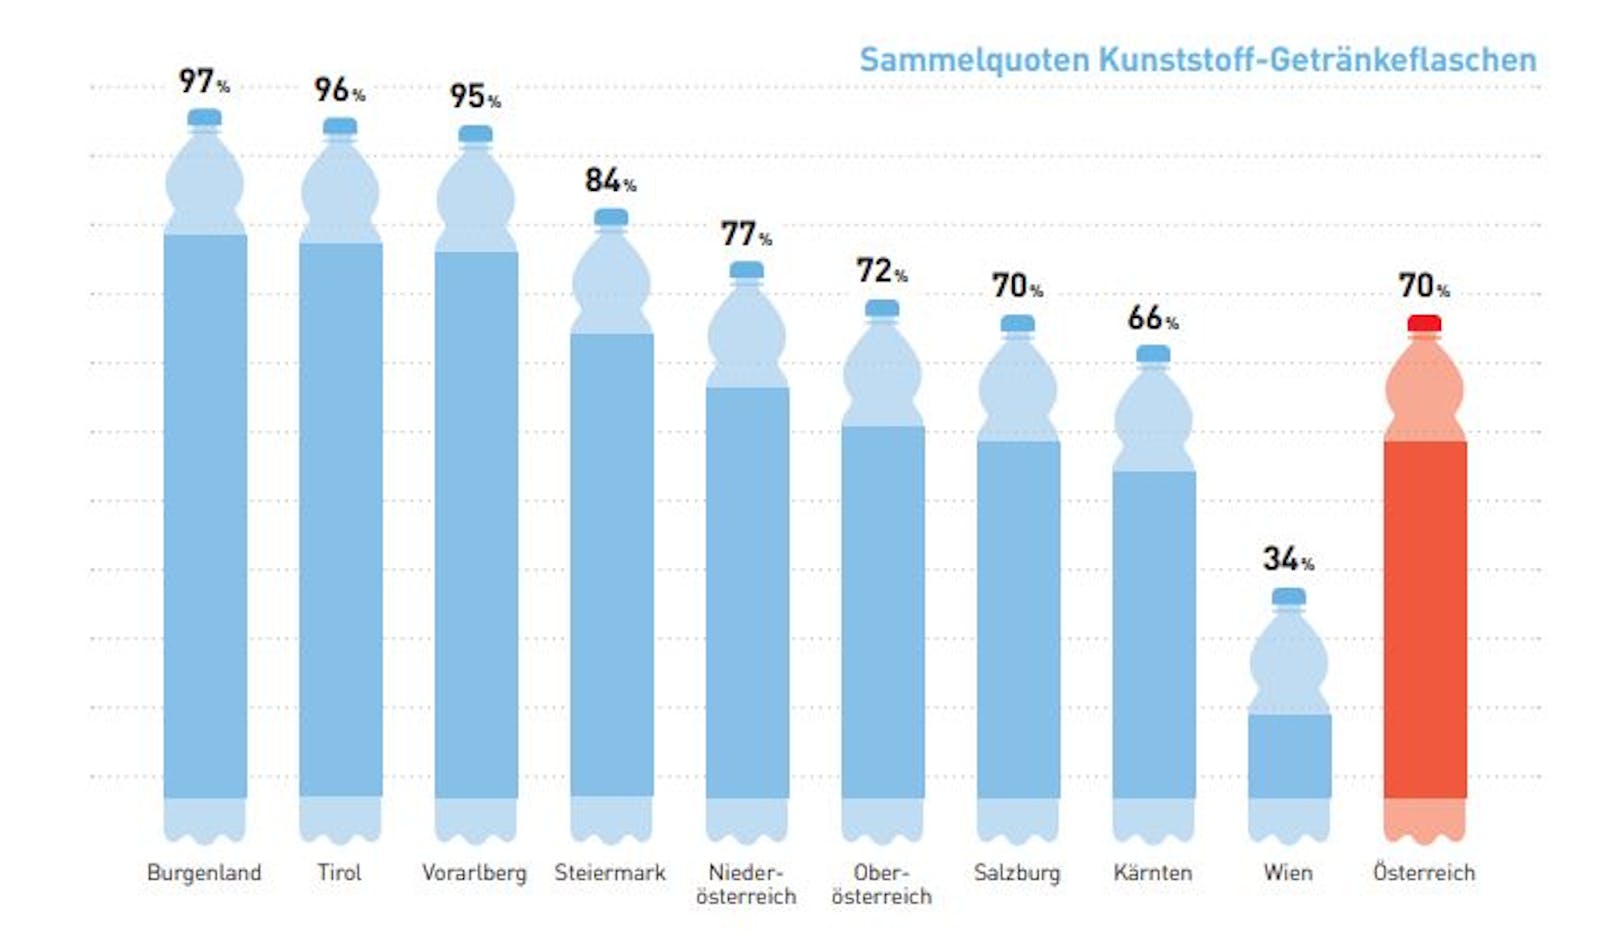 Burgenland, Tirol und Vorarlberg erfüllen schon jetzt - ohne Pfand - die 90-Prozent-Sammelquote, die laut EU-Vorgabe bis 2029 bei Kunststoffflaschen erreicht werden soll<br>